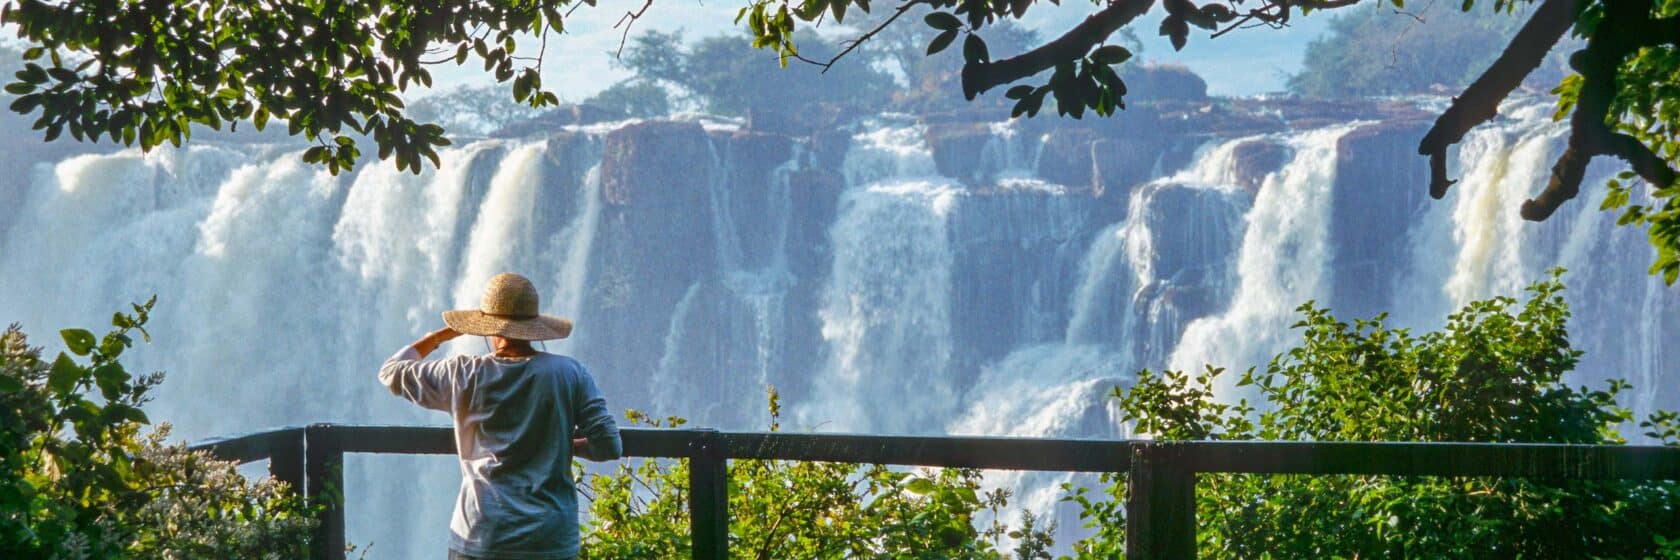 A tourist watching a waterfall in Zimbabwe.